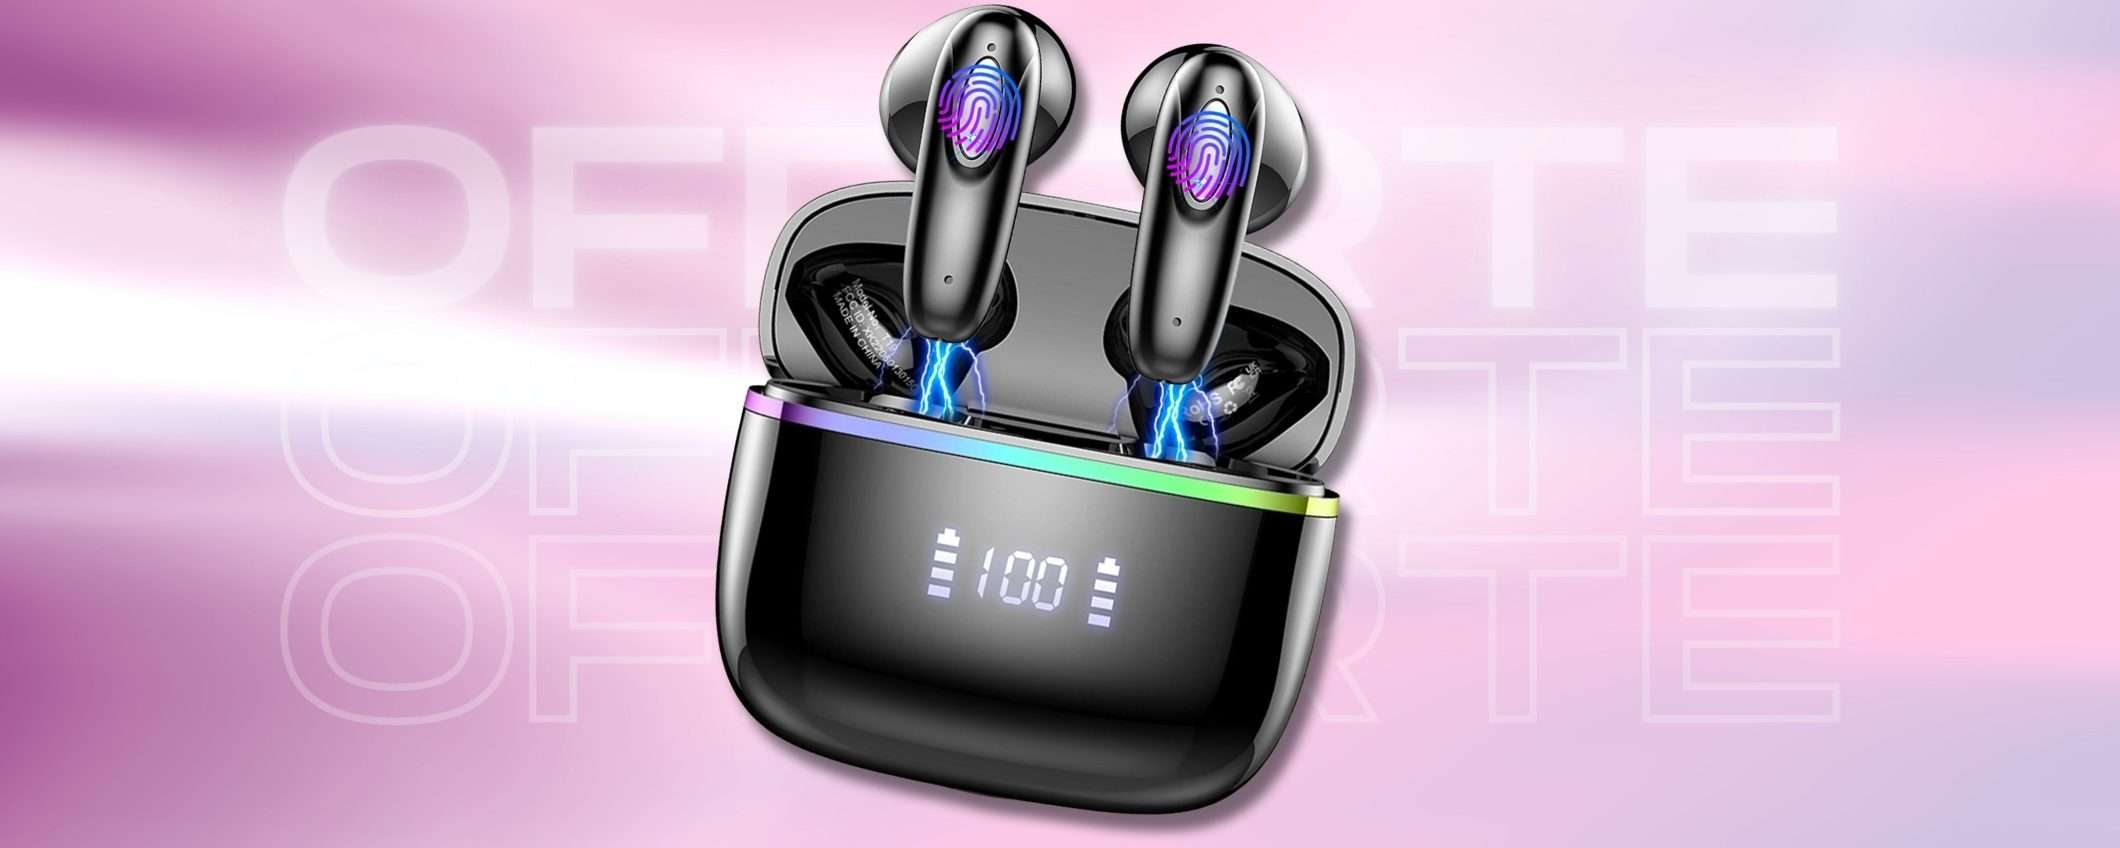 Auricolari Bluetooth 40 ore con controlli touch e display LED (19€)